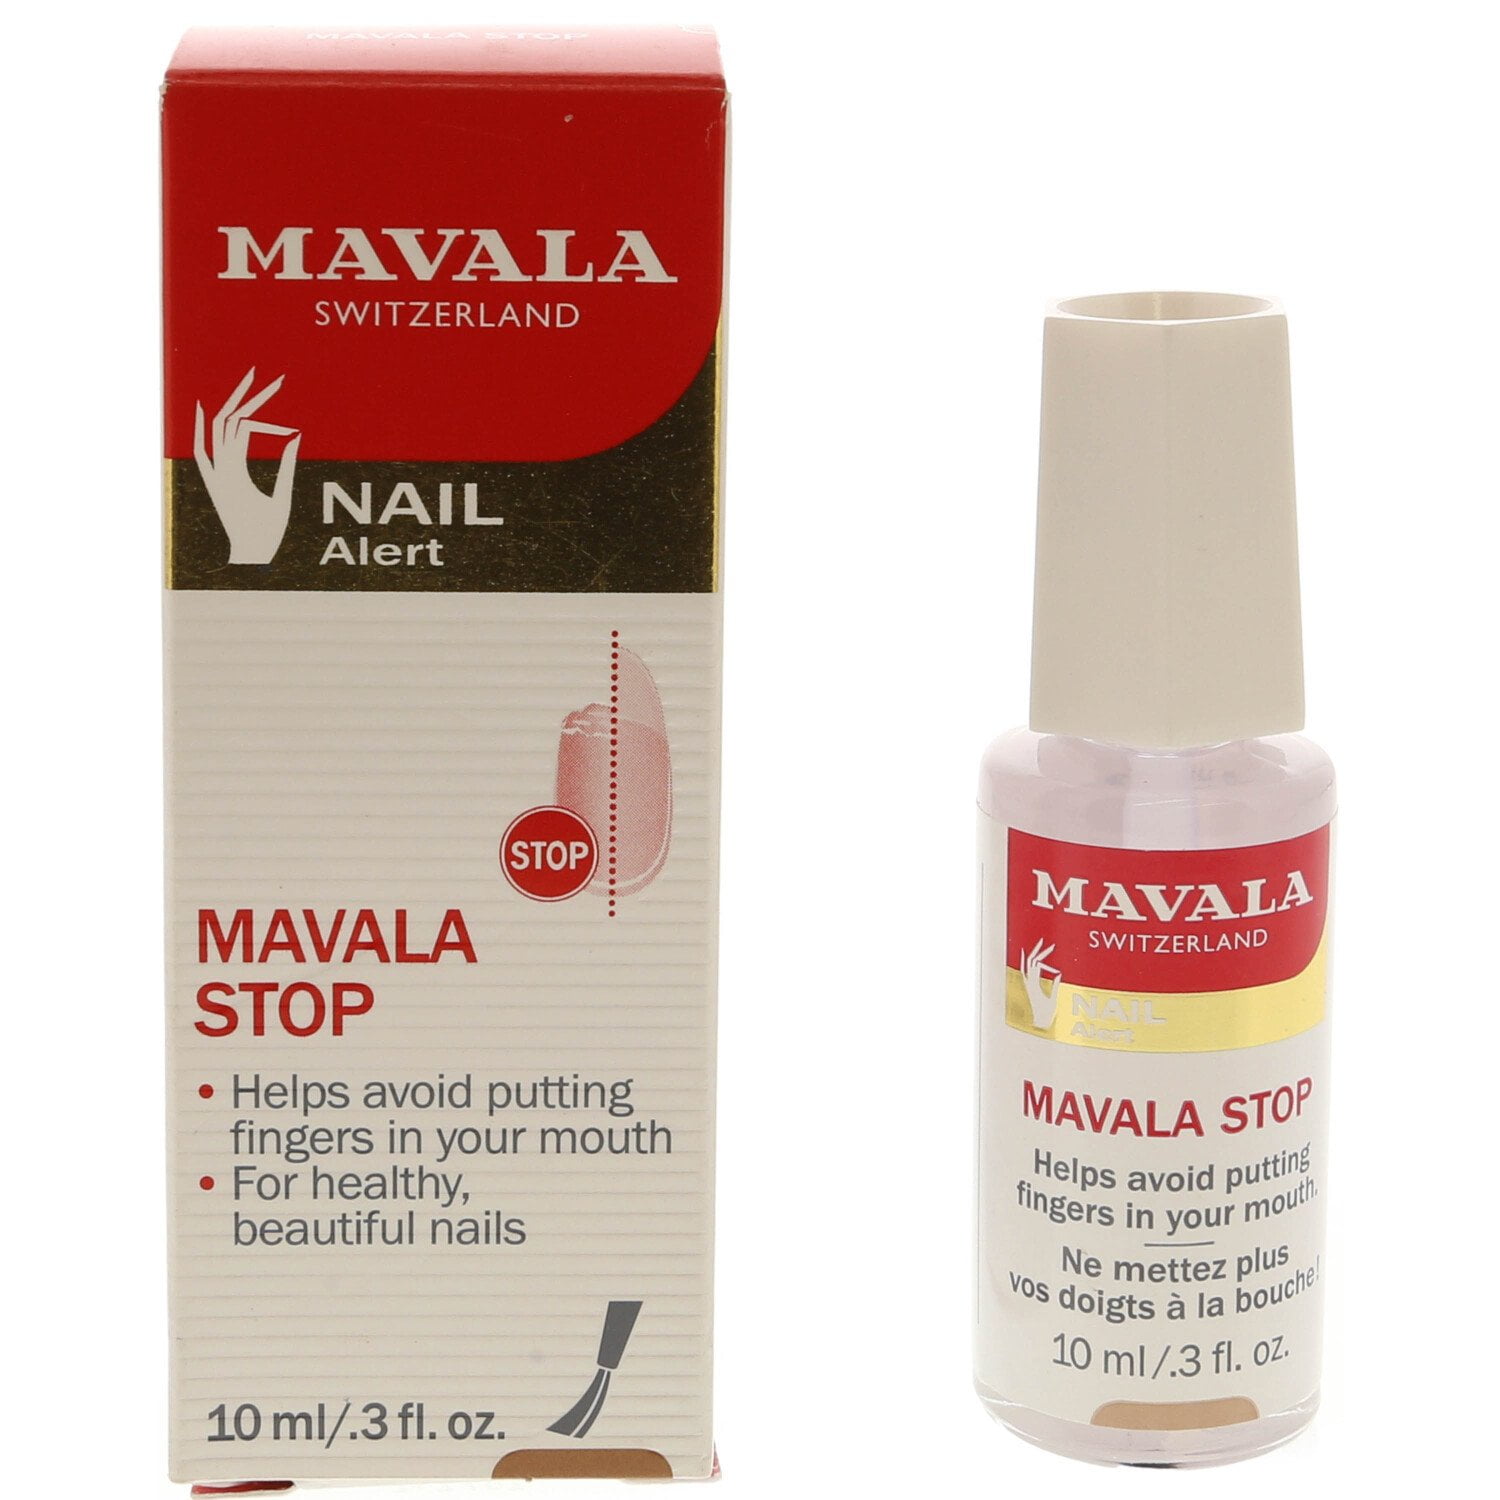 Mavala Anti-Nail-Biting Polish Bitter Coating to Prevent Biting - White |  eBay